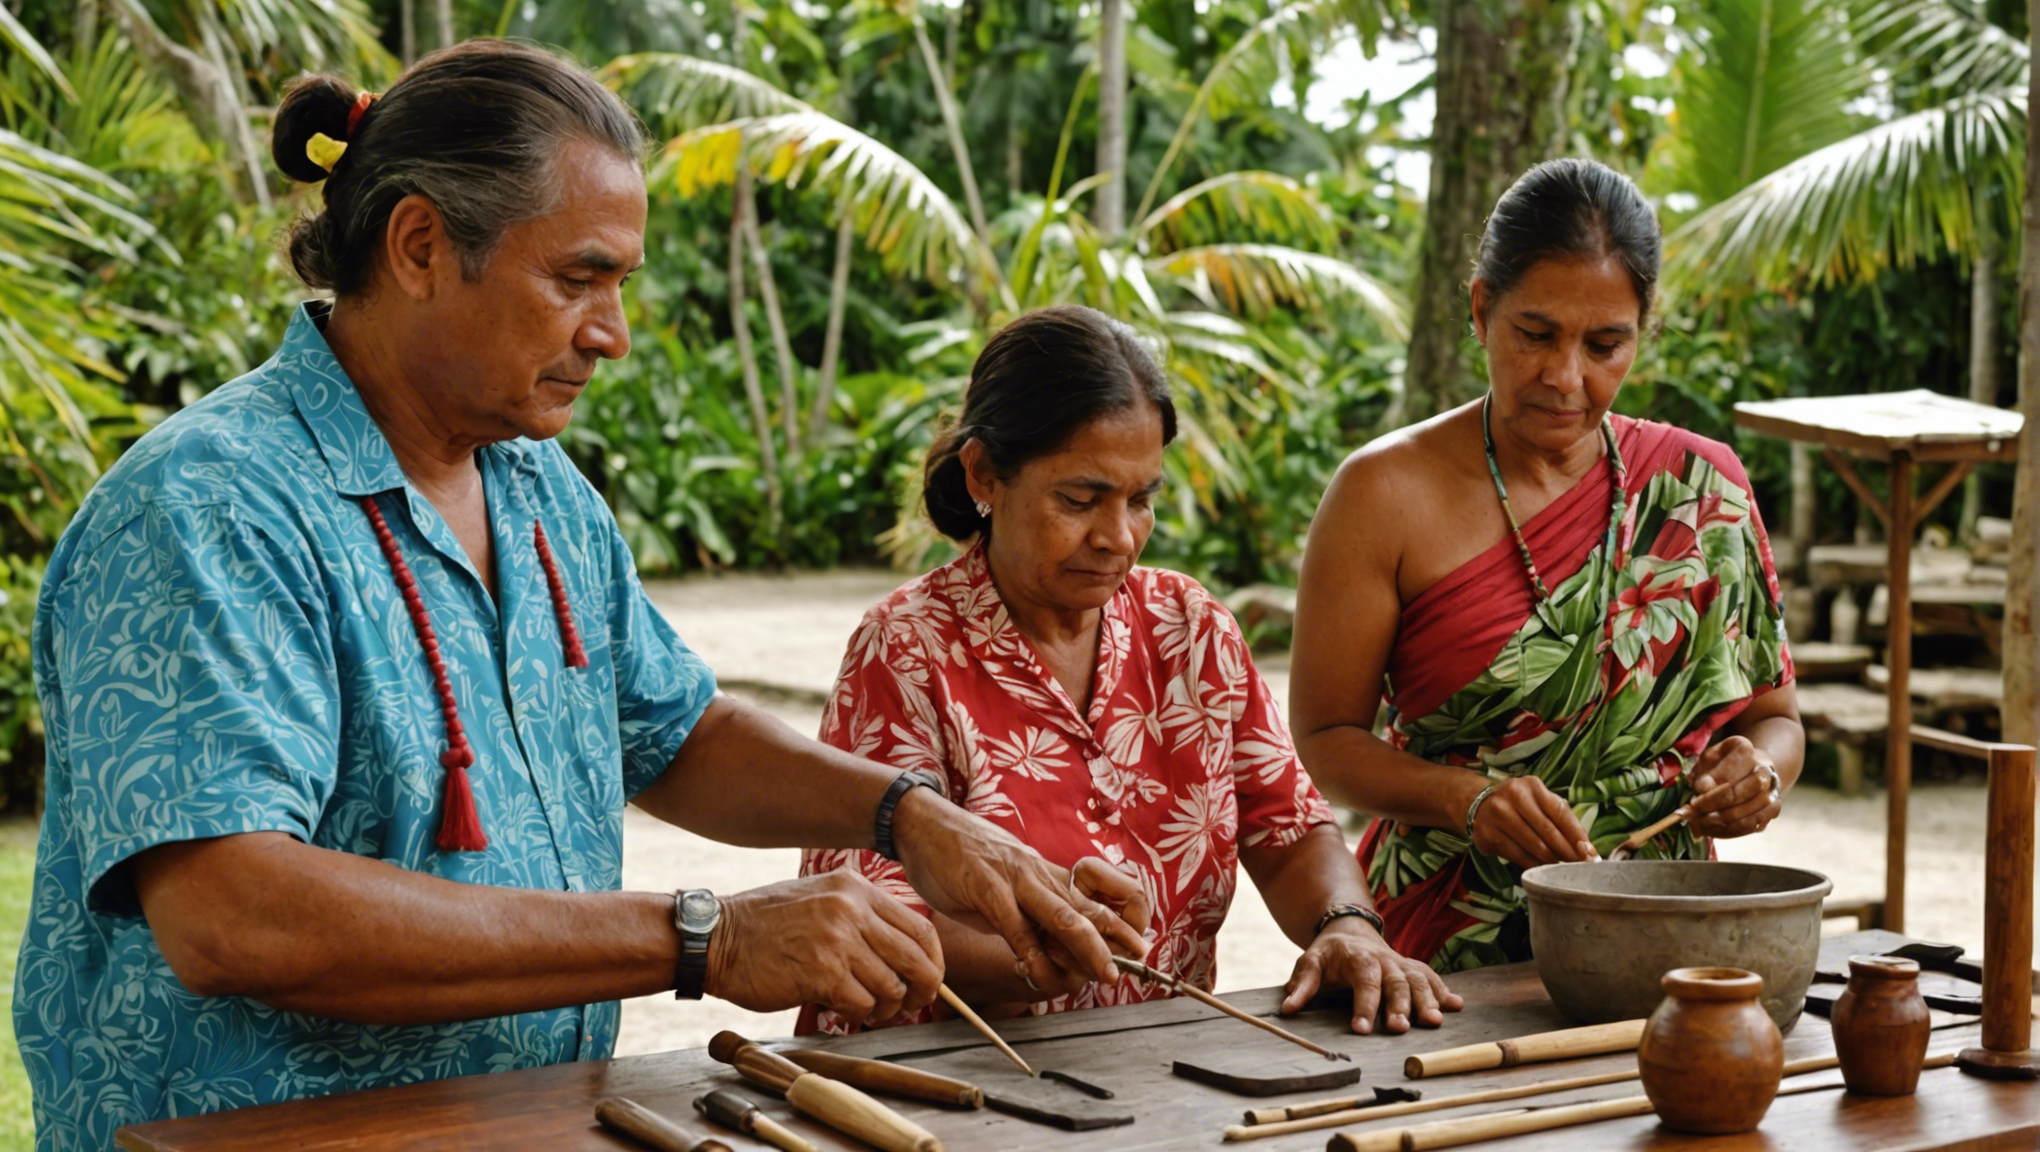 découvrez les trésors artistiques de l'artisanat polynésien de tahiti, un patrimoine riche en culture et en savoir-faire unique au monde.